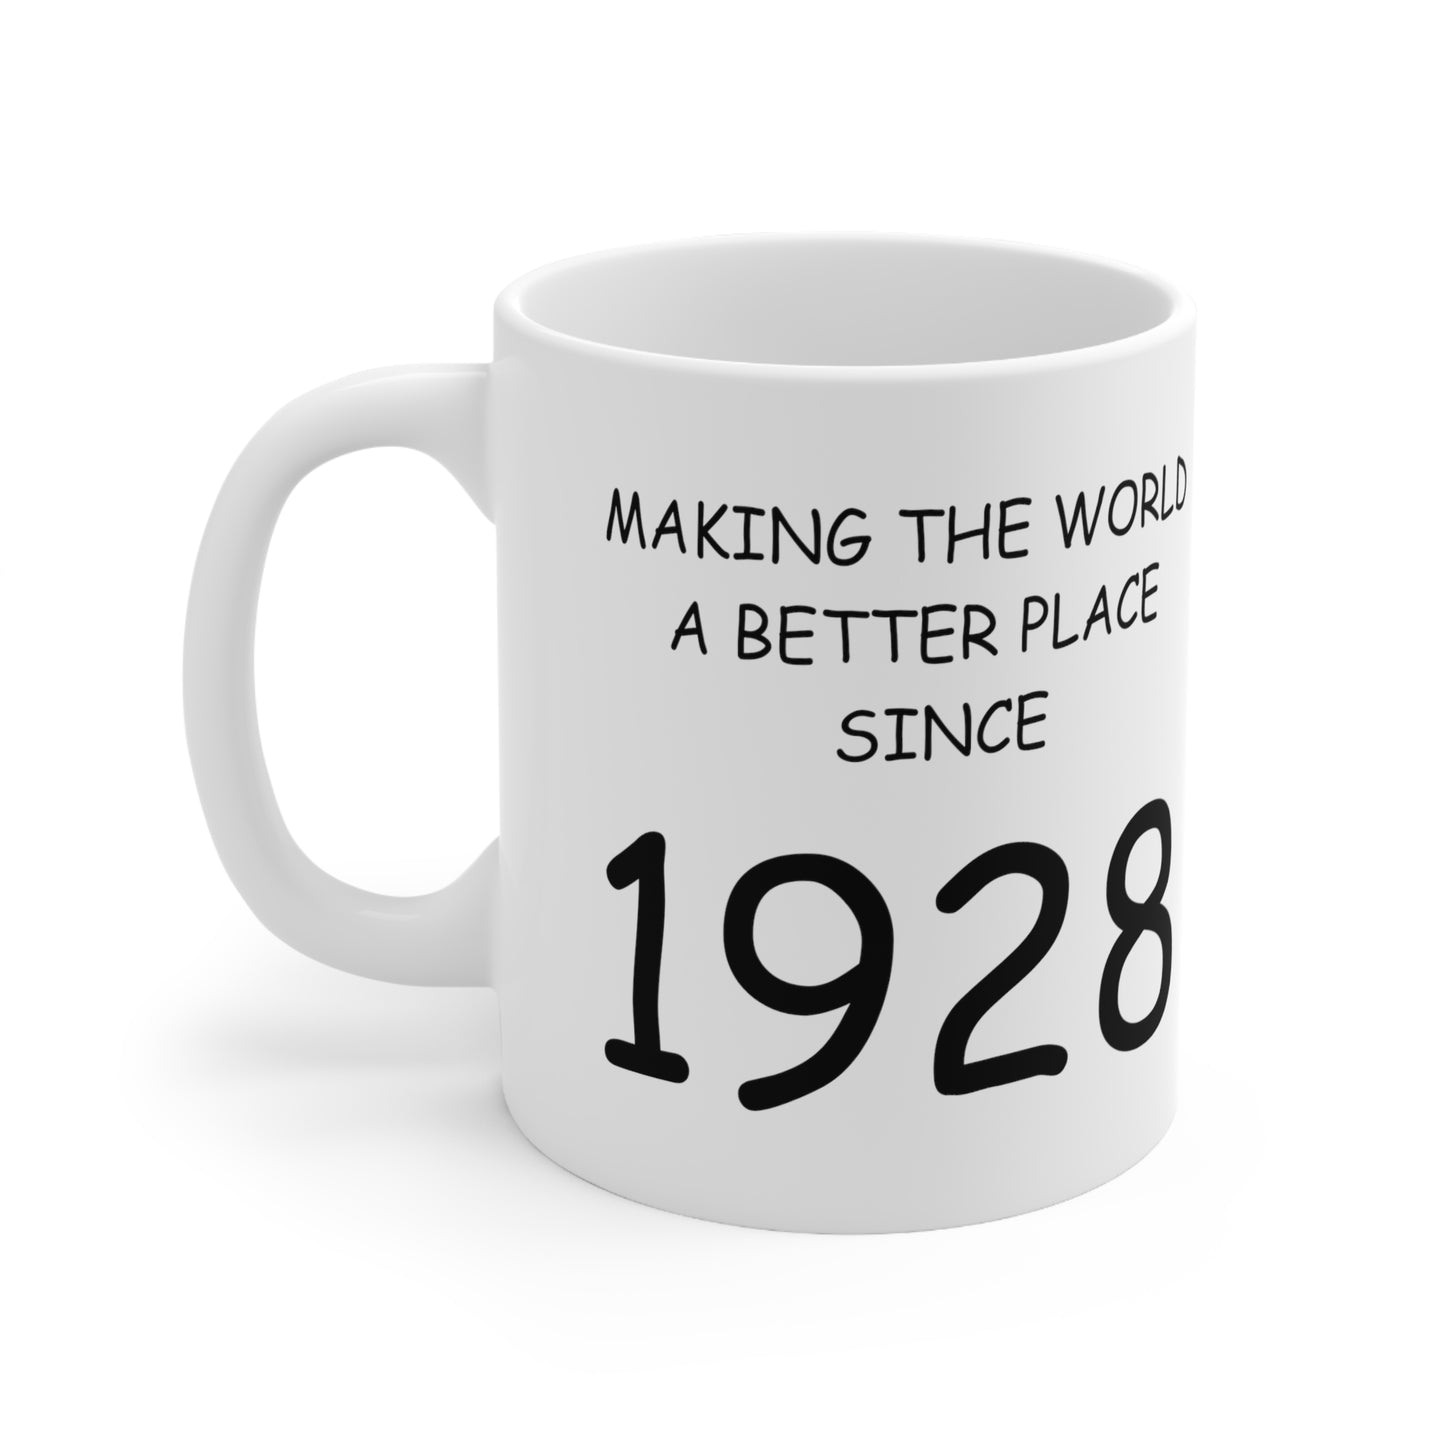 1928 Birthday Ceramic Mug 11oz, White